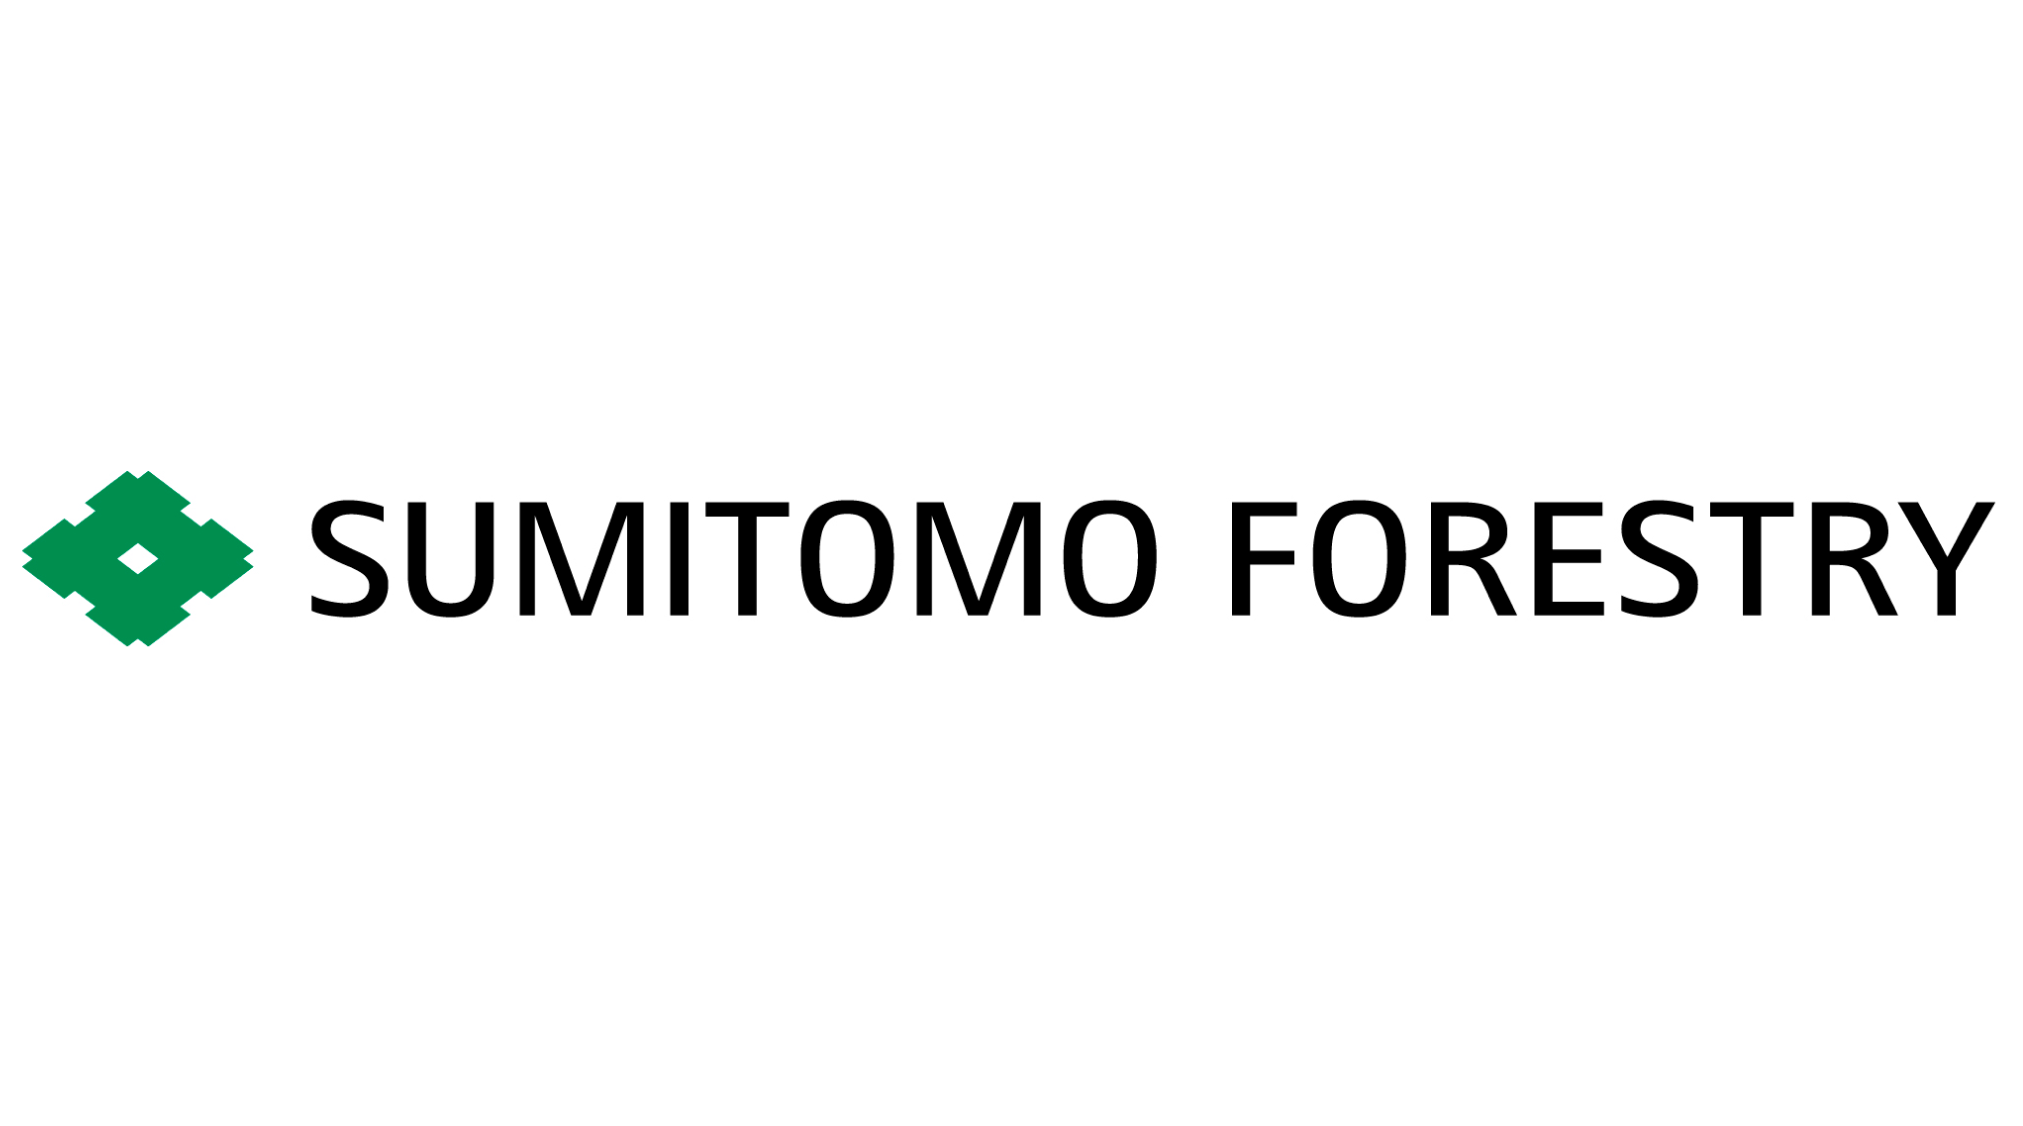 Sumitomo forestry_logo 1